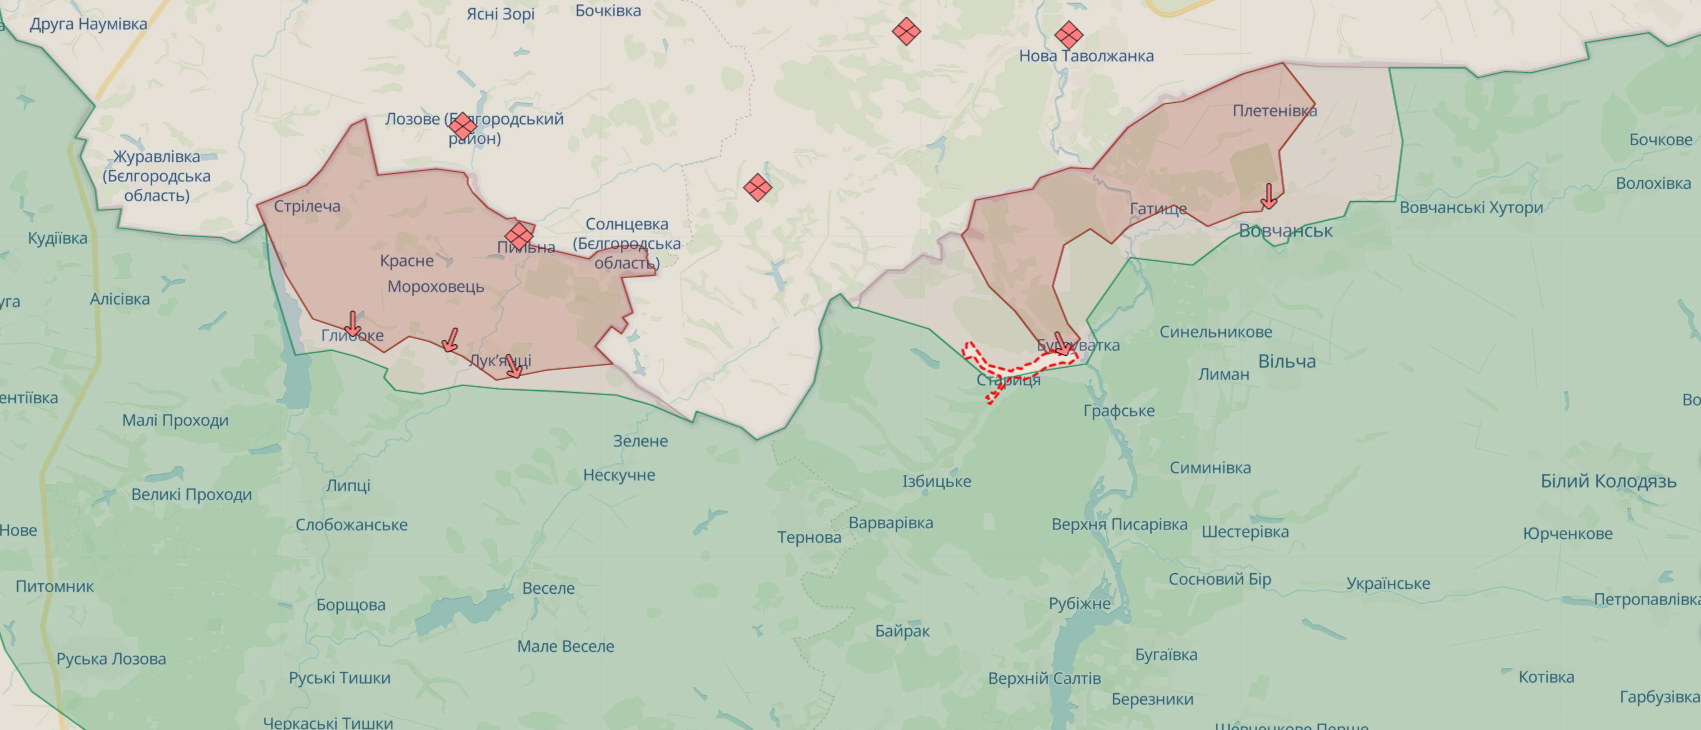 На Харьковском направлении идет бой в районе Старицы, ситуация в Волчанске контролируемая – Генштаб